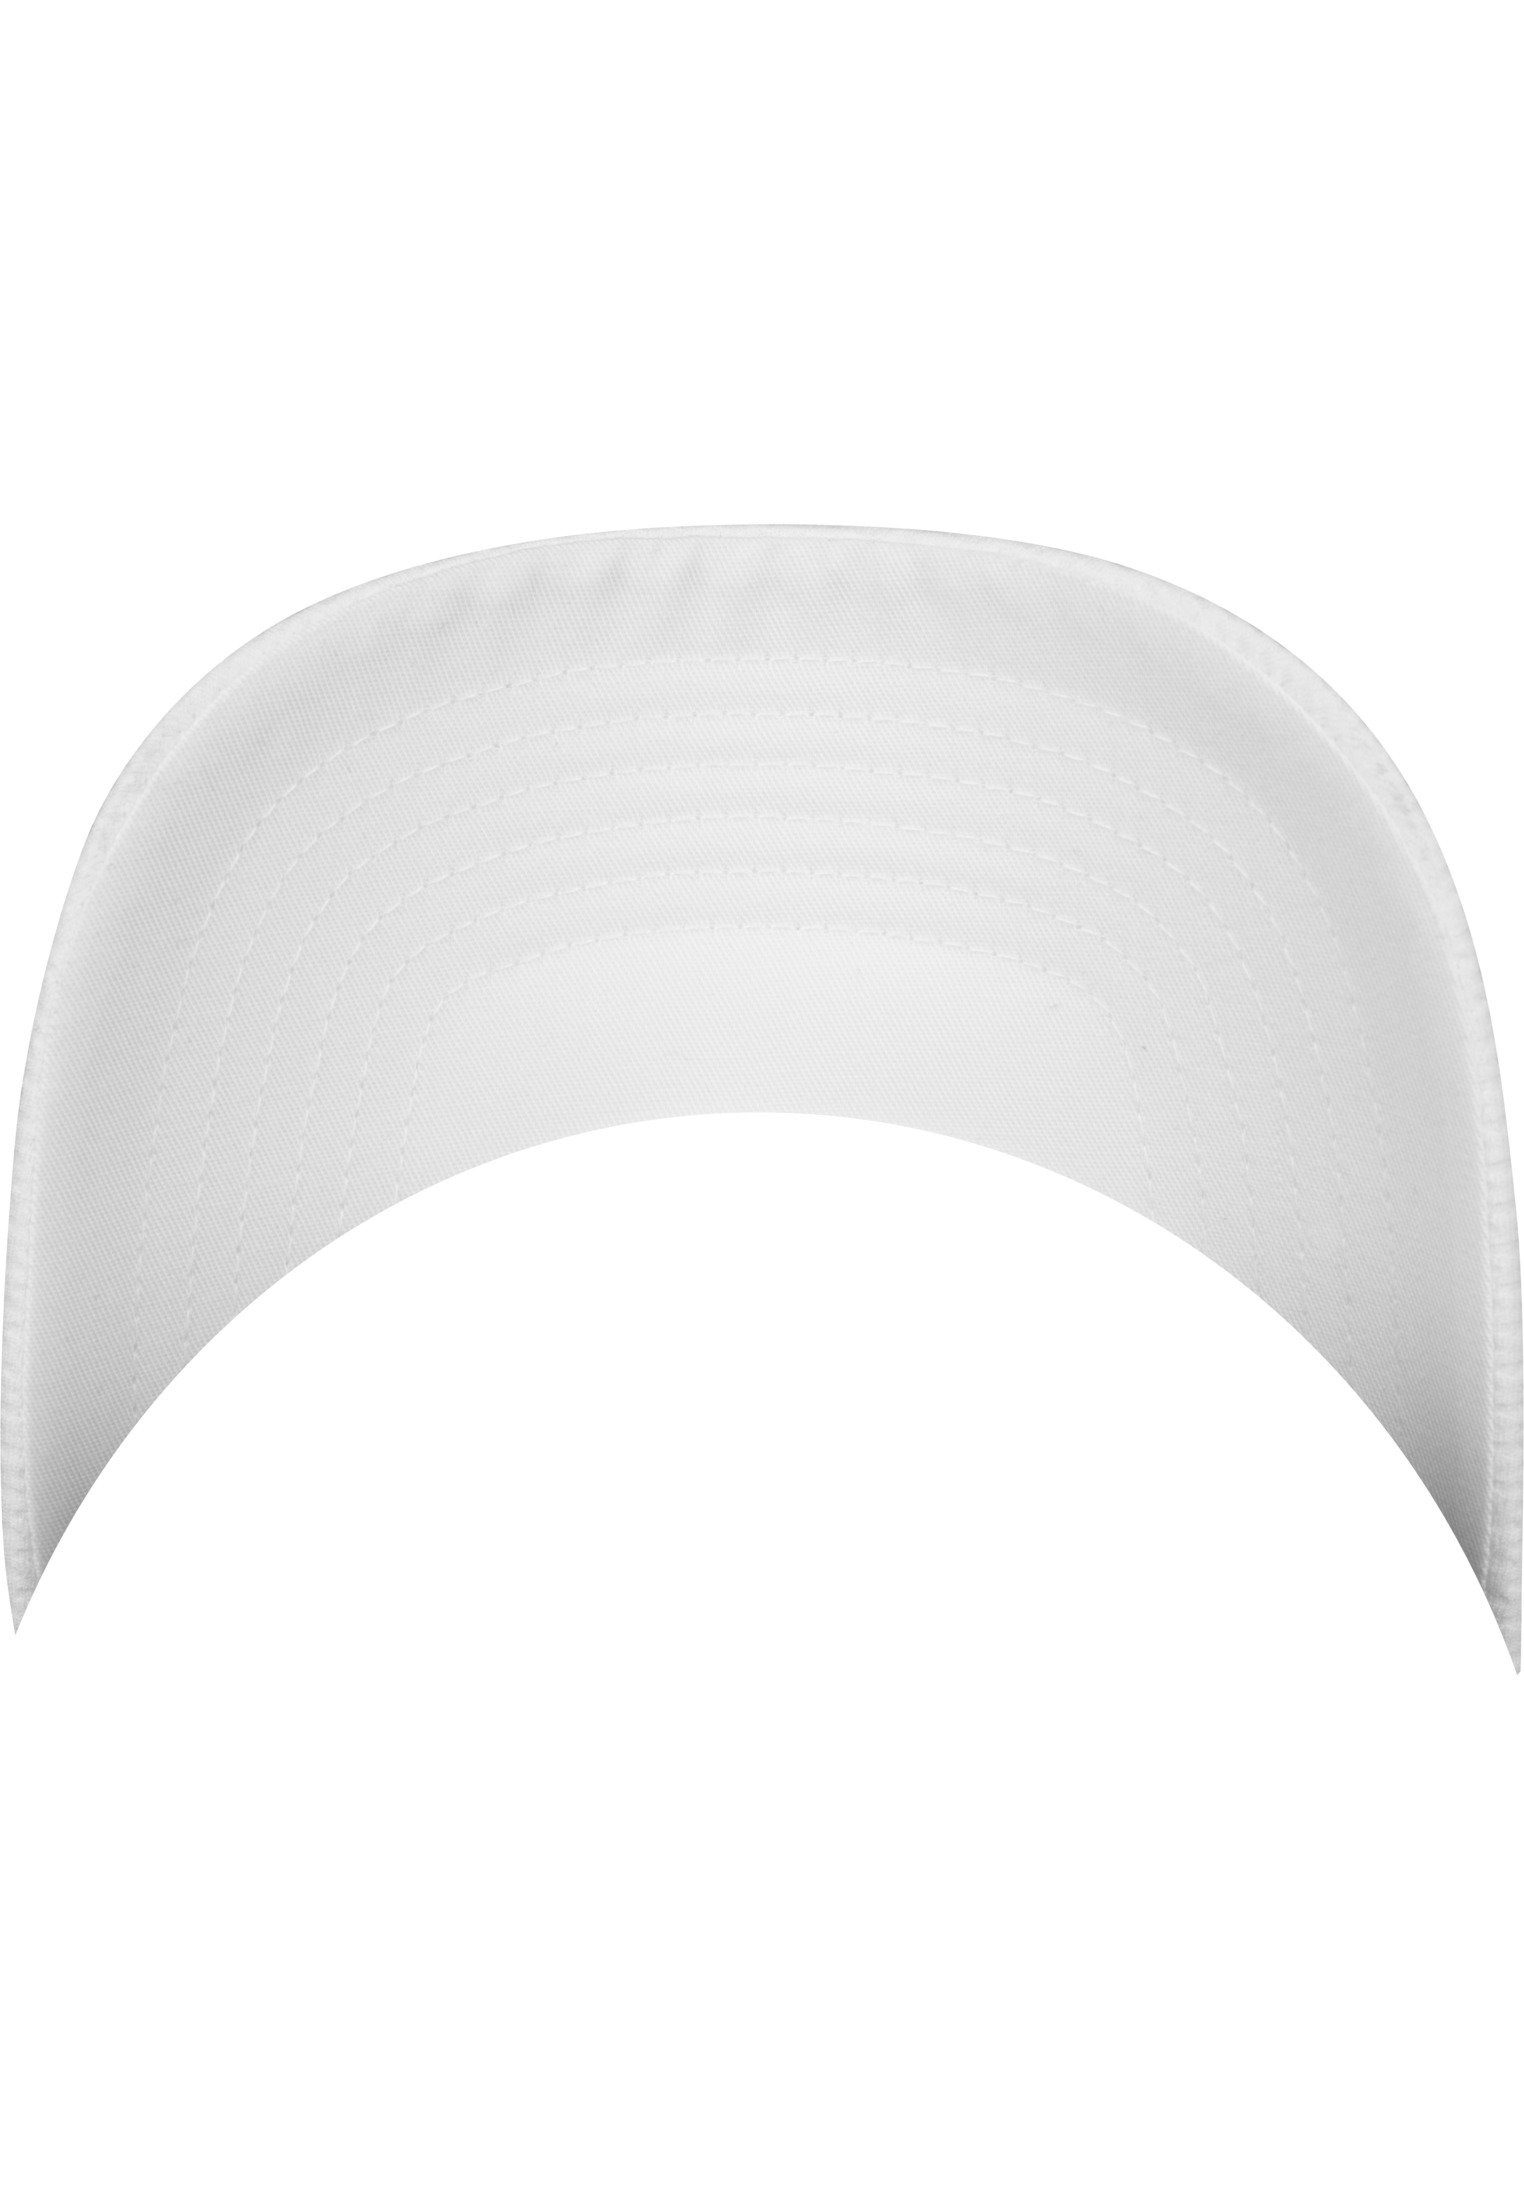 Jersey Cap Cap Flexfit white Hexagon 3D Accessoires Flex Flexfit